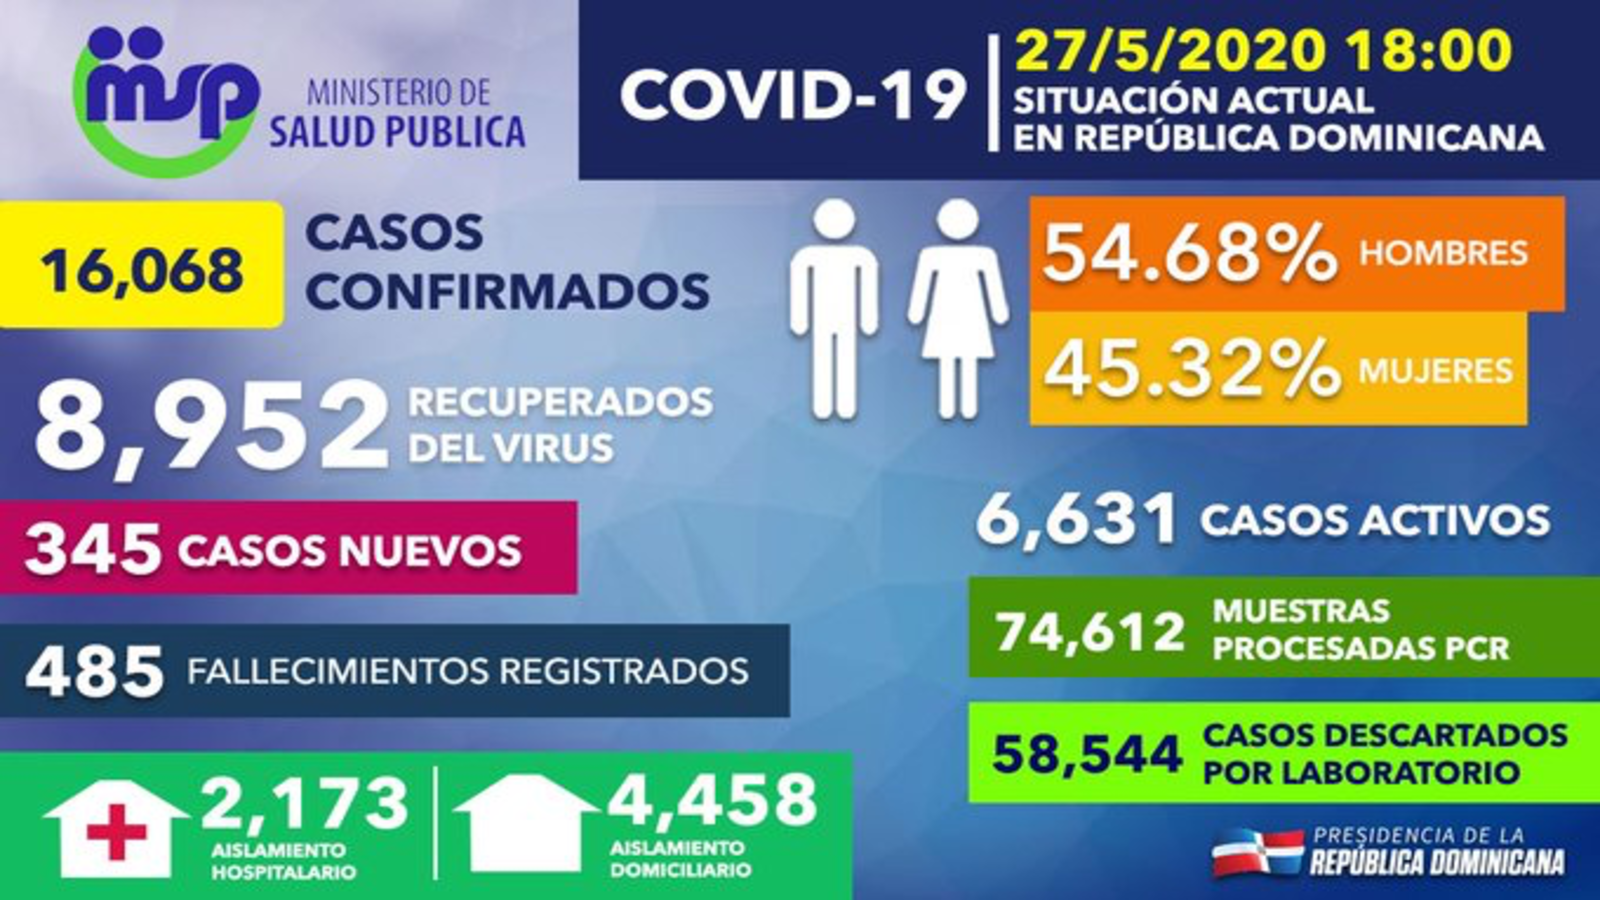 REPÚBLICA DOMINICANA: Tasa de letalidad por coronavirus en República Dominicana baja a 3.02%; recuperados ascienden a 8,952